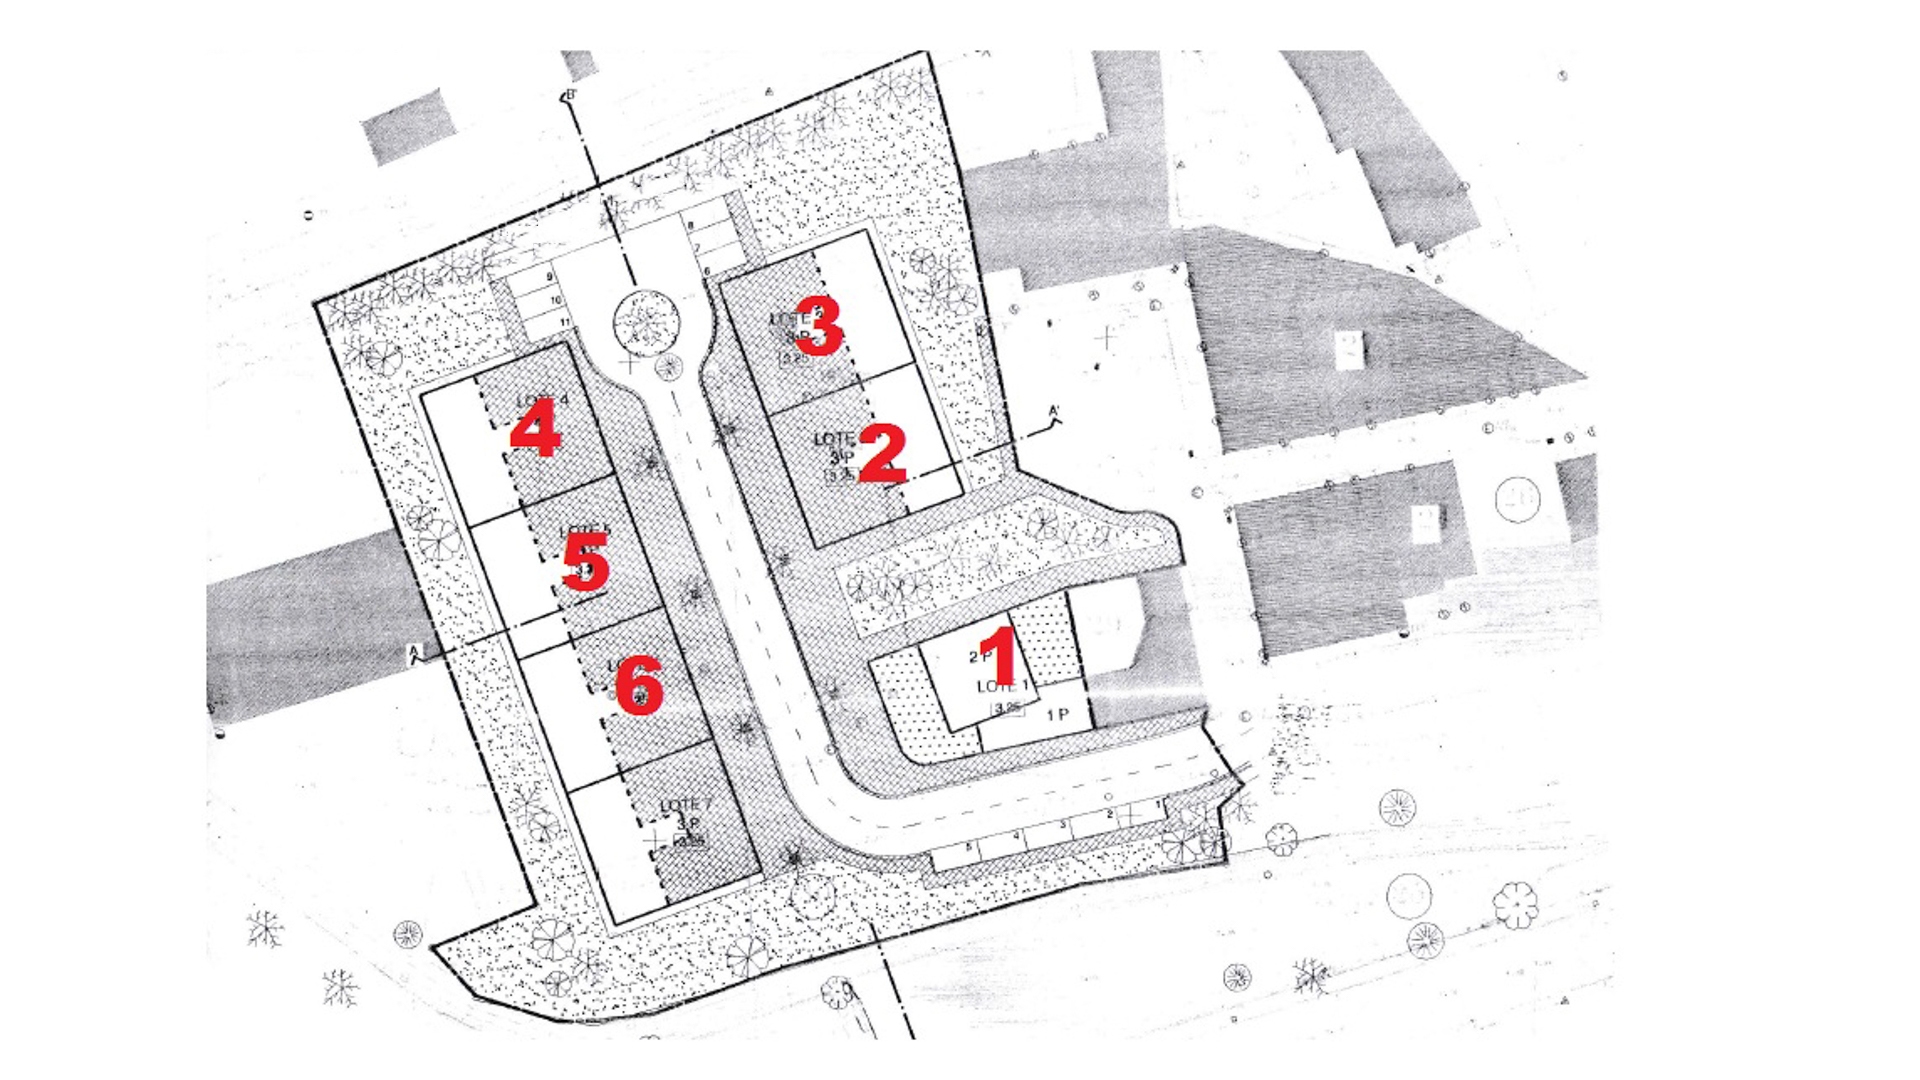 Projet de développement urbain à Parchal | VM1316 6 parcelles voisines avec la capacité de construire une grande villa individuelle de deux étages plus 5 appartements avec un total de 20 appartements individuels T2 et T3.